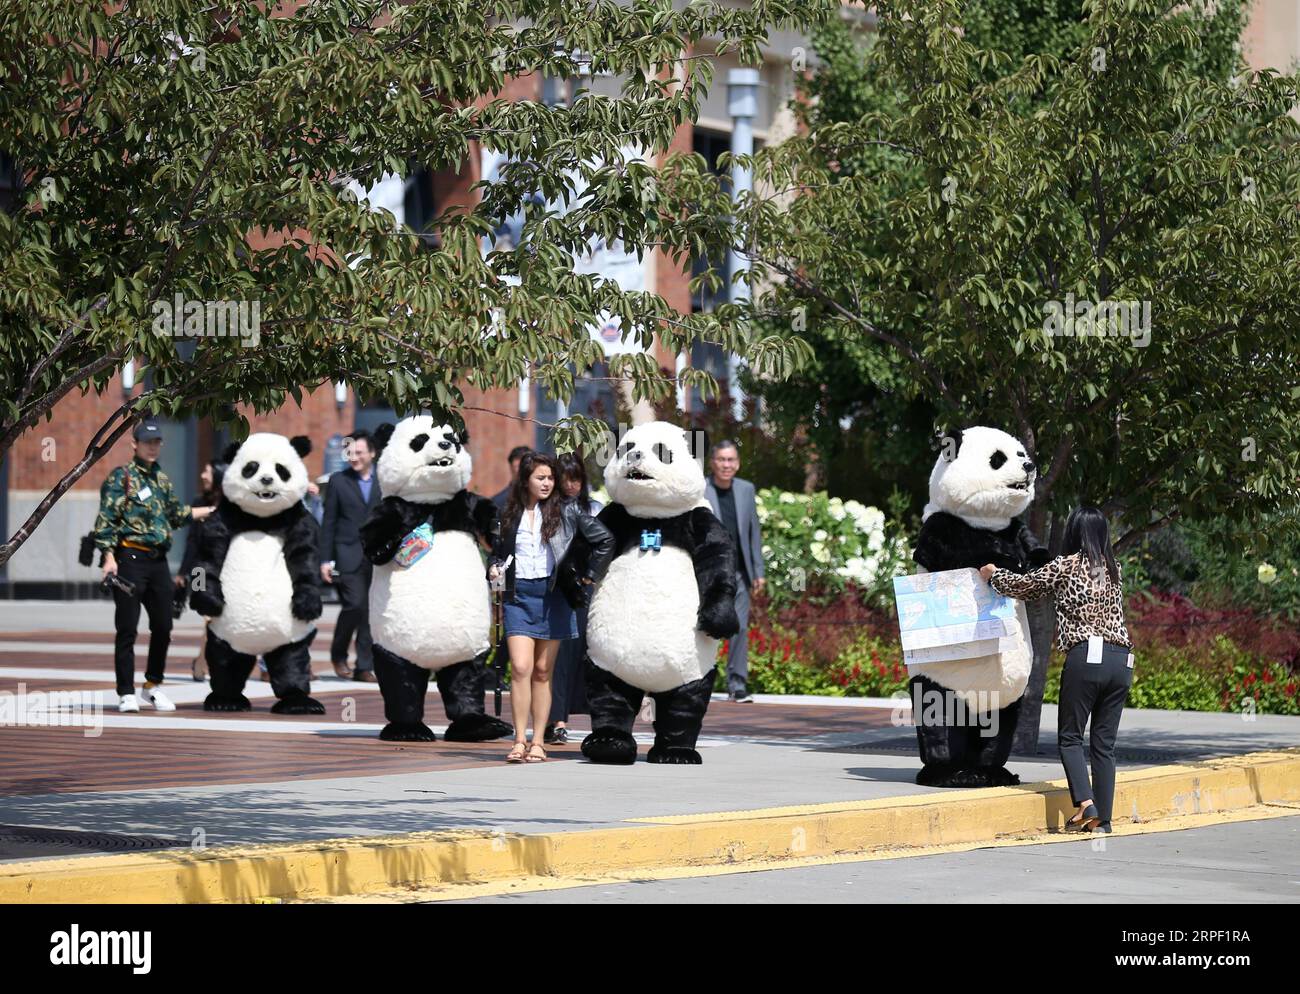 (190909) -- NEW YORK, 9 settembre 2019 -- i panda in costume visitano il Citi Field durante la cerimonia di lancio dell'Hello Panda Festival a New York, negli Stati Uniti, il 9 settembre 2019. Un festival invernale con lanterne cinesi, arti e cucine mondiali atterrerà a dicembre nel Citi Field di New York, il più grande del suo genere in Nord America, secondo una conferenza stampa di lunedì. Con una superficie di quasi 70.000 metri quadrati all'interno del famoso campo da baseball nel quartiere del Queens, l'Hello Panda Festival presenterà oltre 120 set di lanterne colorate. Il festival si terrà dal 6 dicembre 2019 Foto Stock